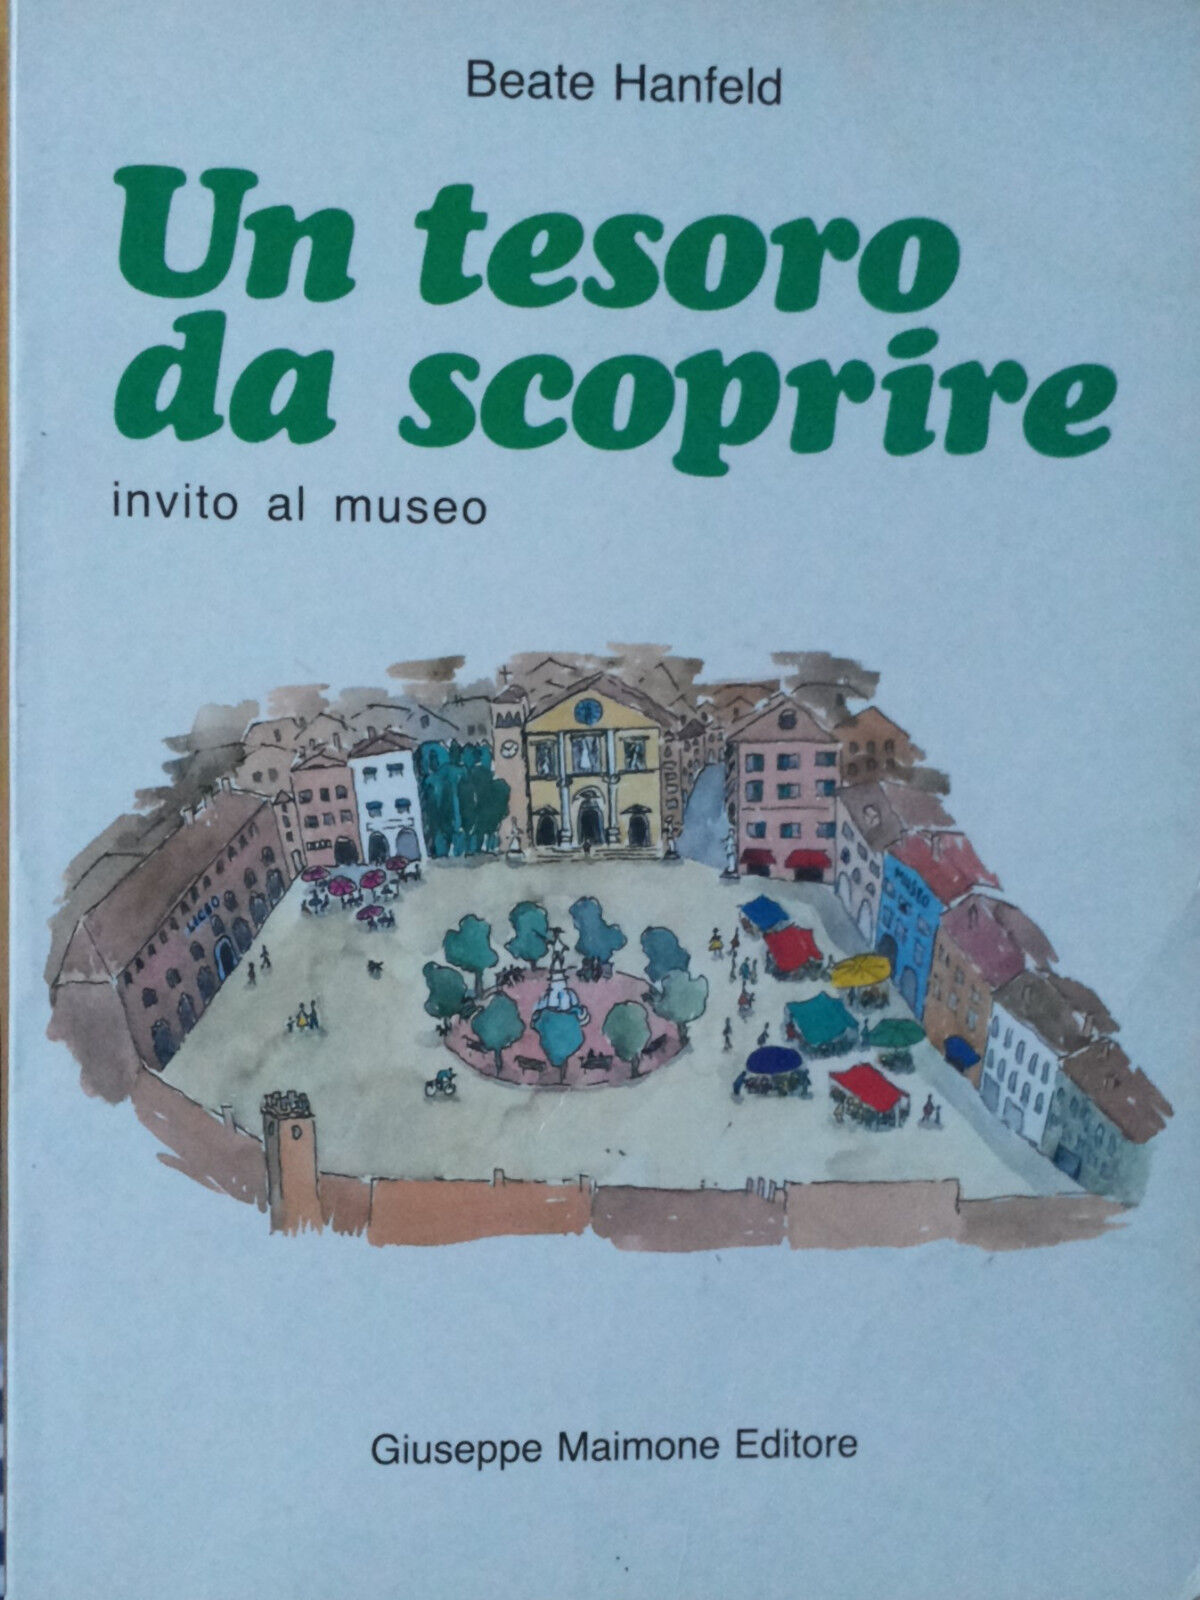 Un tesoro da scoprire - Hanfeld - Giuseppe Maimone Editore,1986 - R libro usato